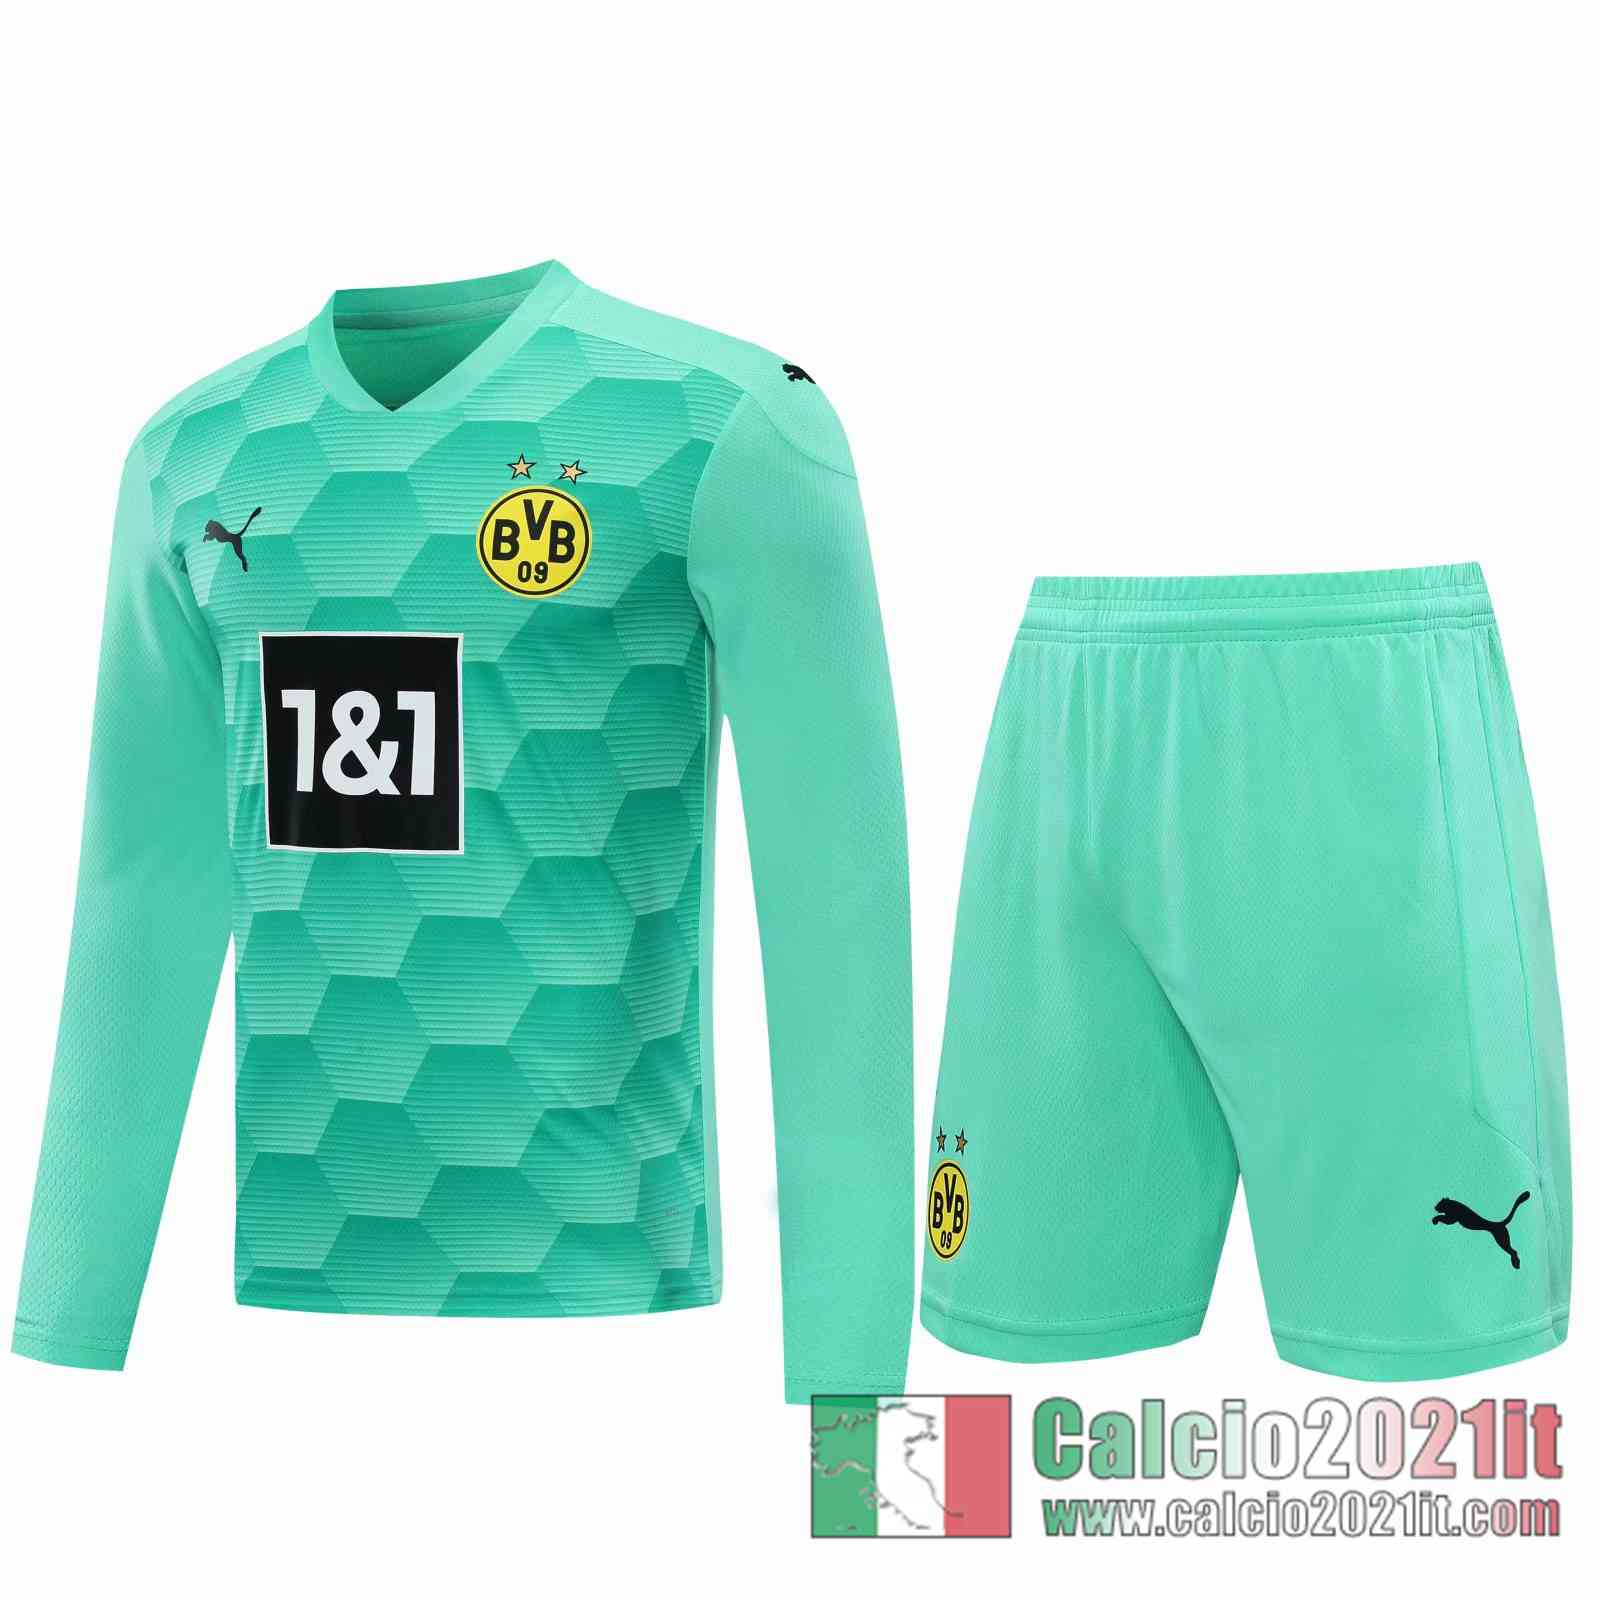 Dortmund Maglie Calcio Portiere Manica Lunga blu verde 2020 2021